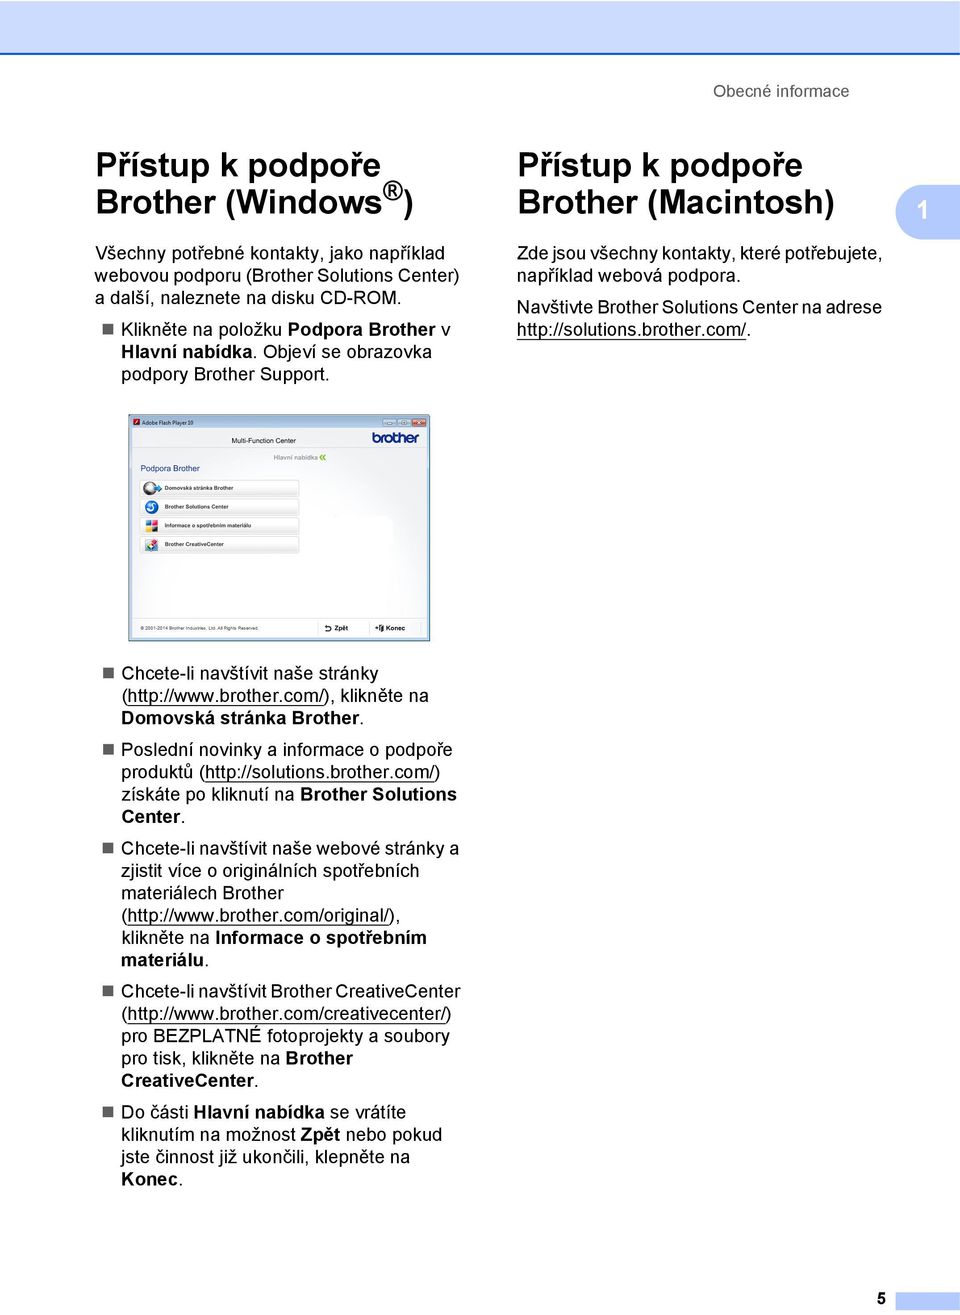 Přístup k podpoře Brother (Macintosh) 1 Zde jsou všechny kontakty, které potřebujete, například webová podpora. Navštivte Brother Solutions Center na adrese http://solutions.brother.com/.